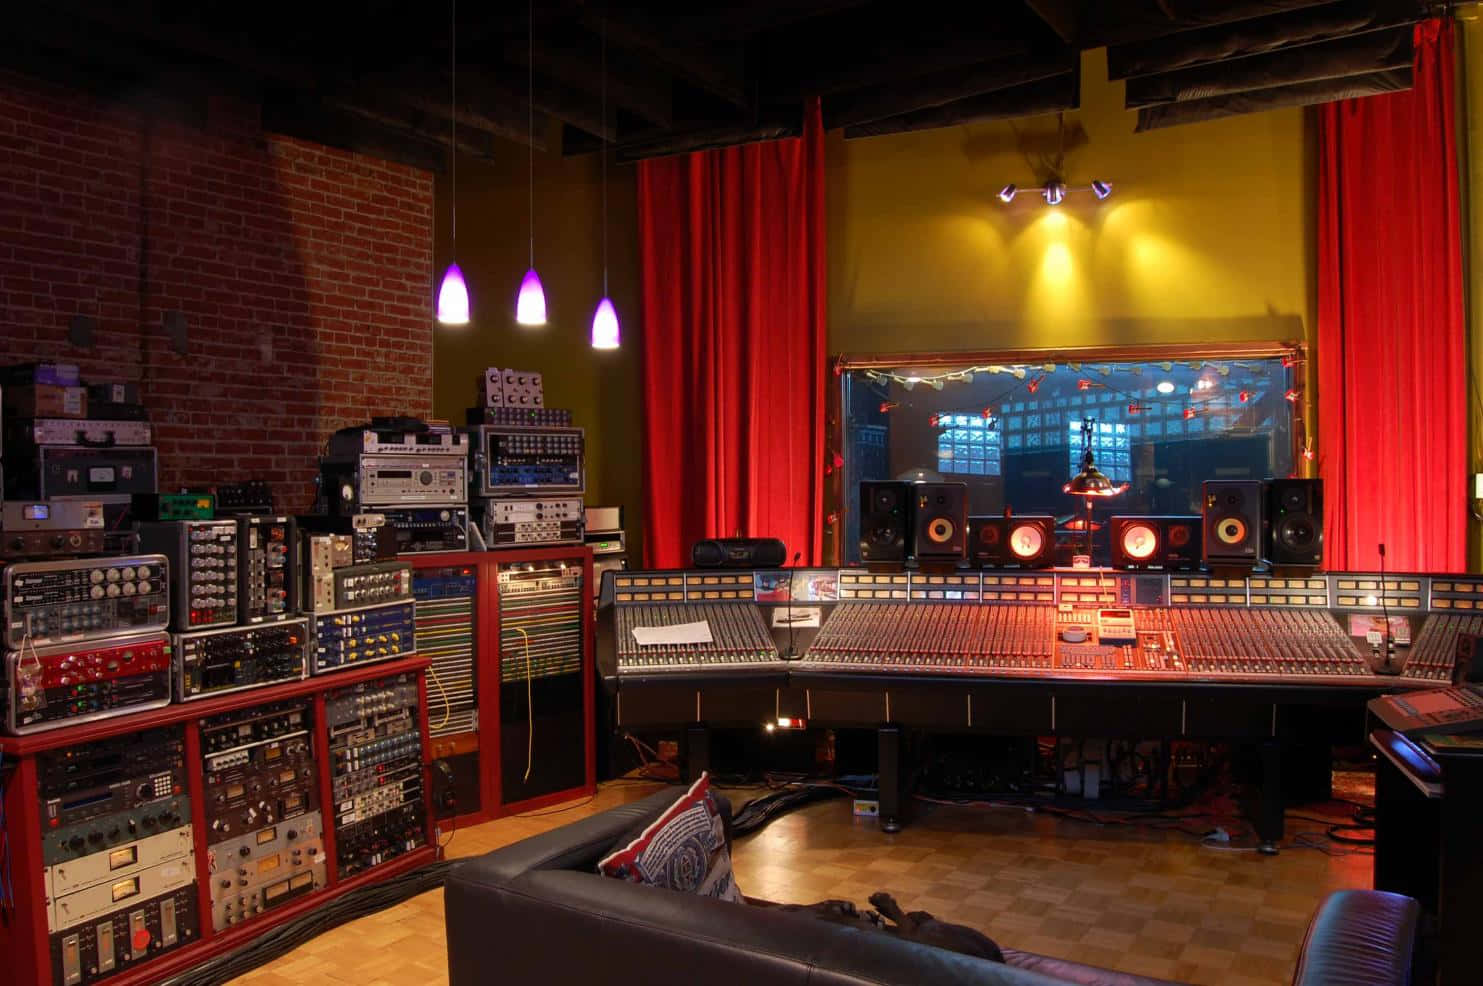 A glimpse into the modern recording studio